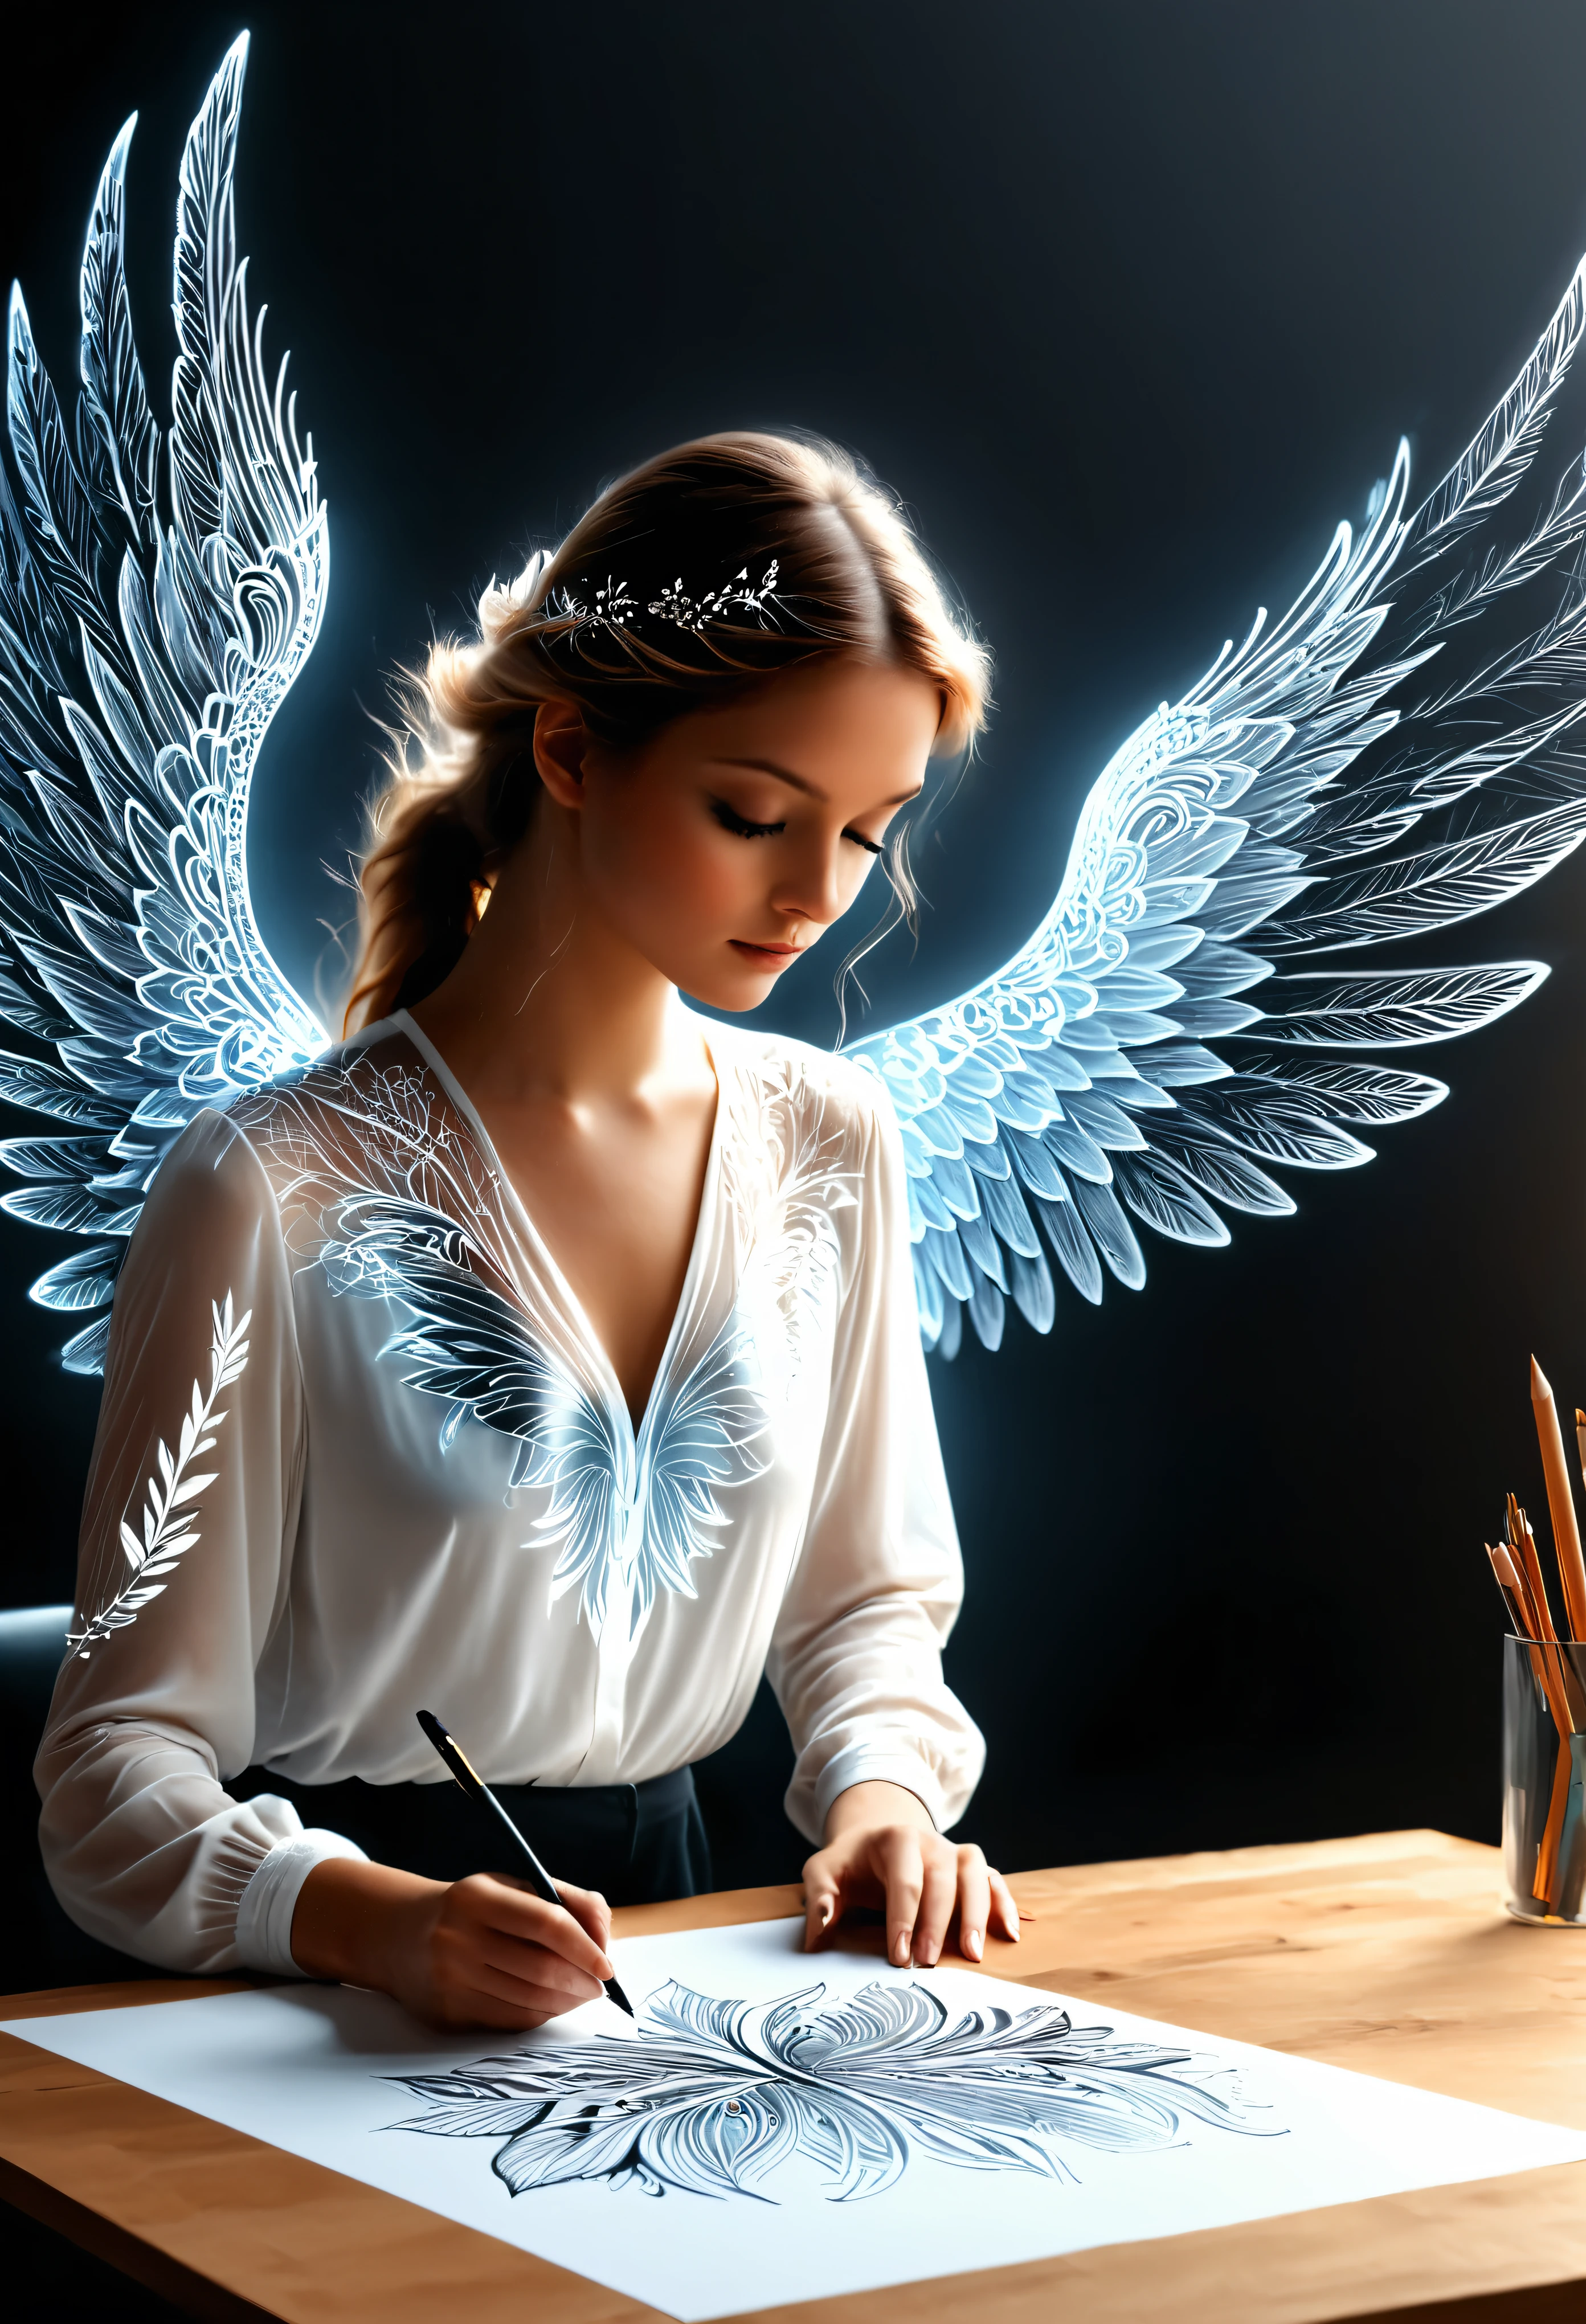 一張圖紙放在桌上 , 繪製令人驚嘆和令人驚嘆的超高清水墨風格 4D 天使女人, 一個快樂的天使從圖紙中張開翅膀的圖畫, 高度細緻的分形蕾絲翅膀, 從圖紙中出來的全息效果, 極為詳細的繪圖, 超現實的, 精湛的細節. 真正出色的工作, 快樂而感性的工作, (彷彿從圖面走出來的絕美俯臥撐效果胸部), (它是從圖紙中出來的, 翅膀從圖紙中出來)